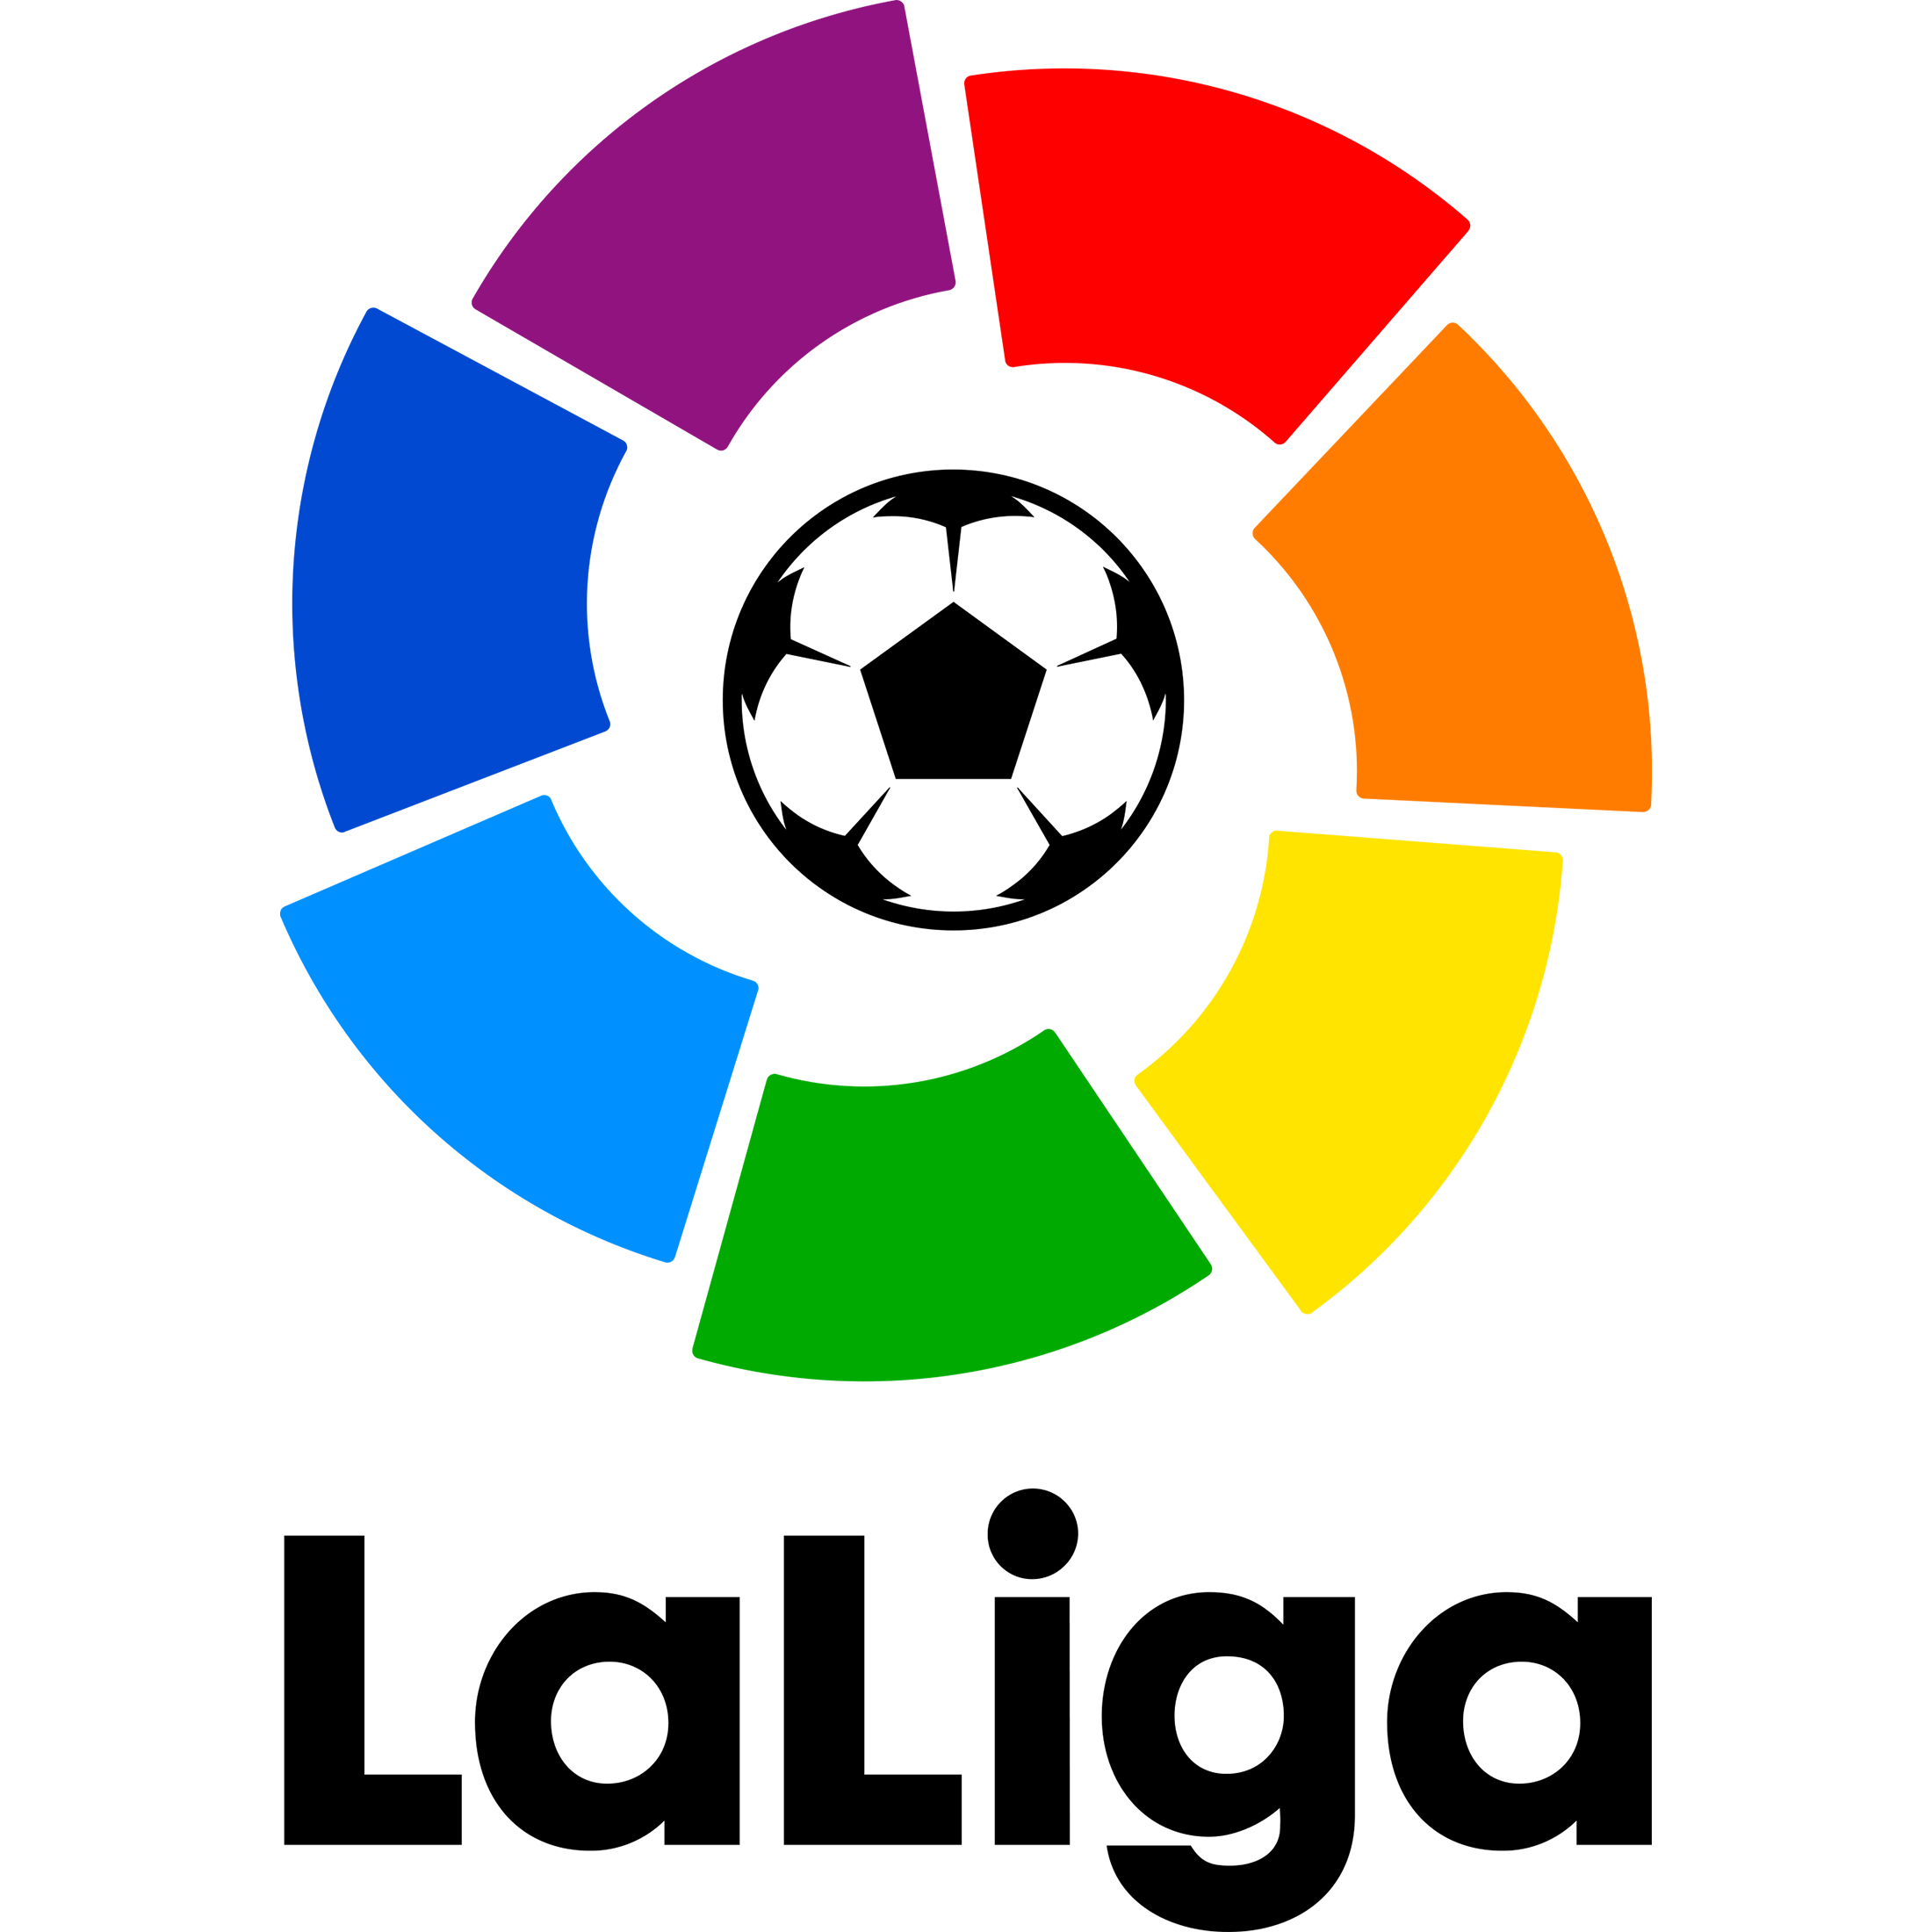 La Liga logo